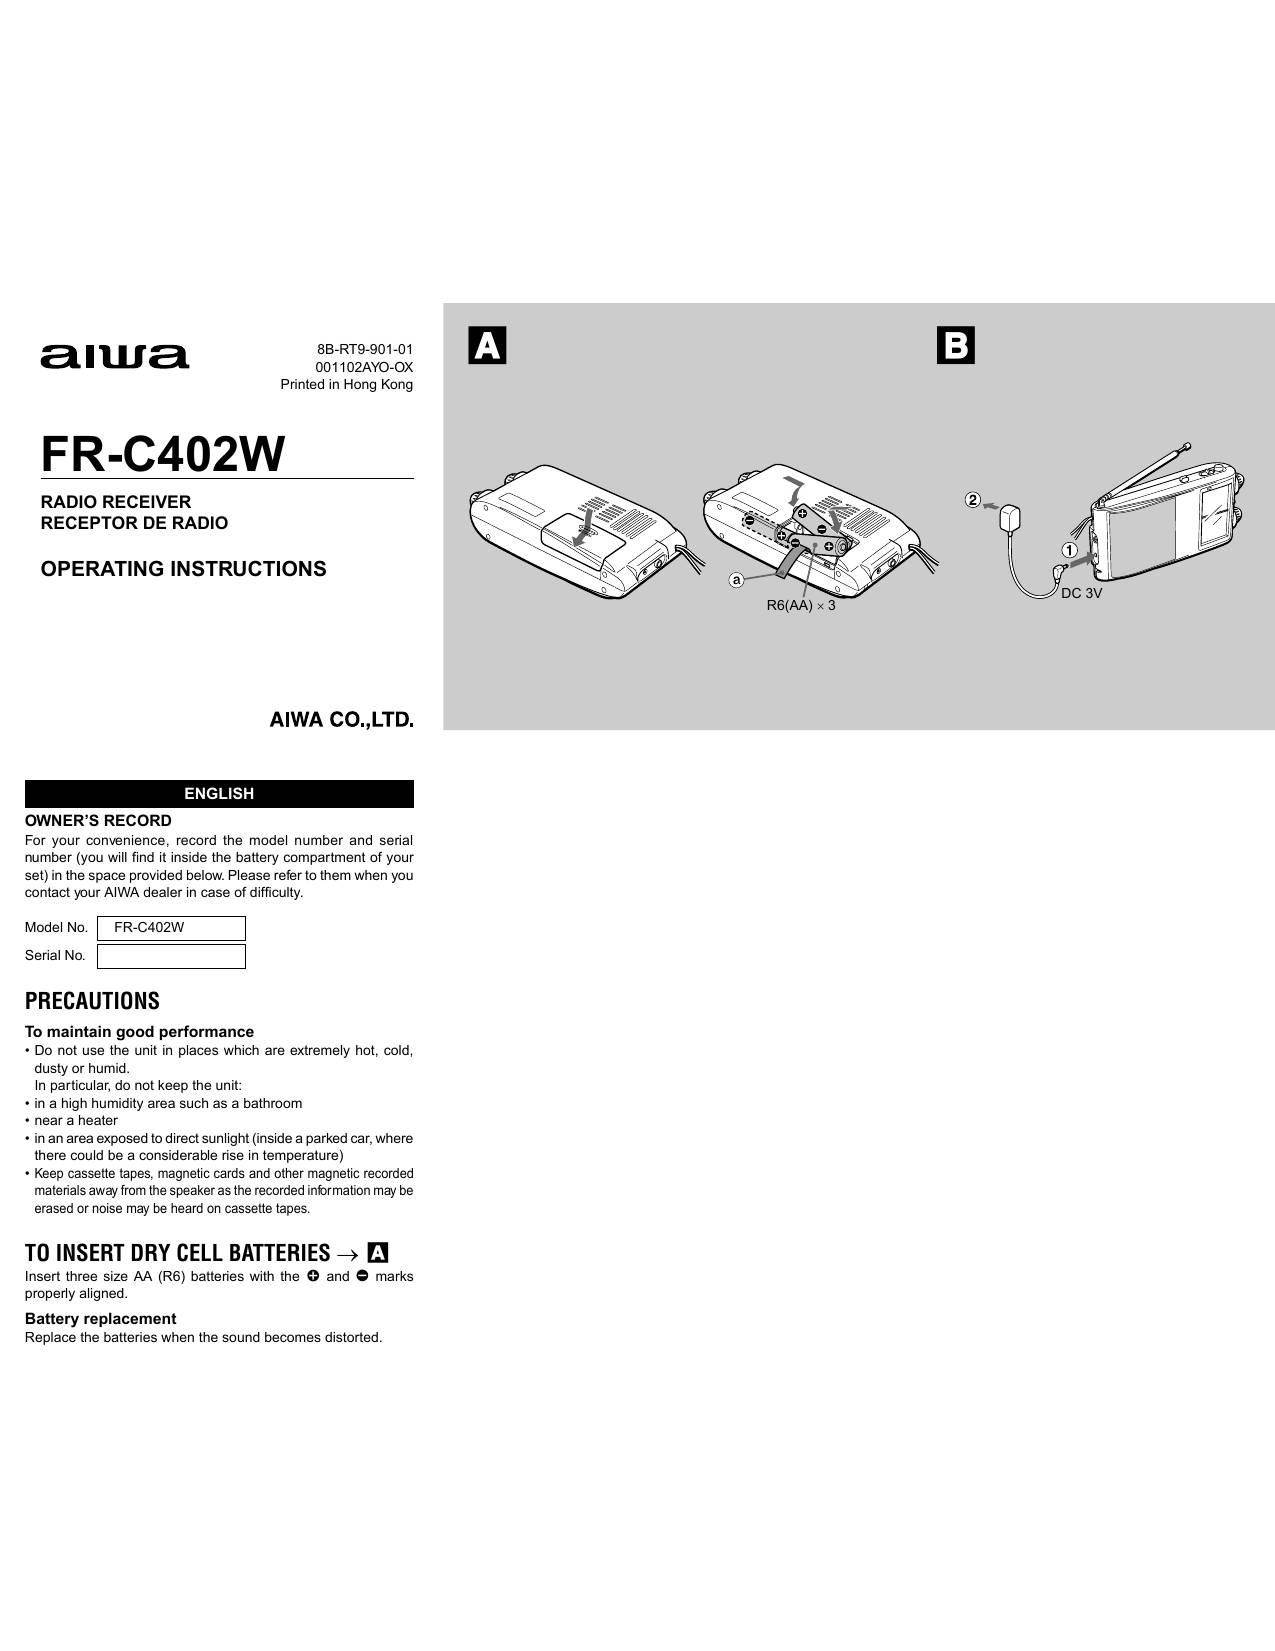 Aiwa FR-C402W